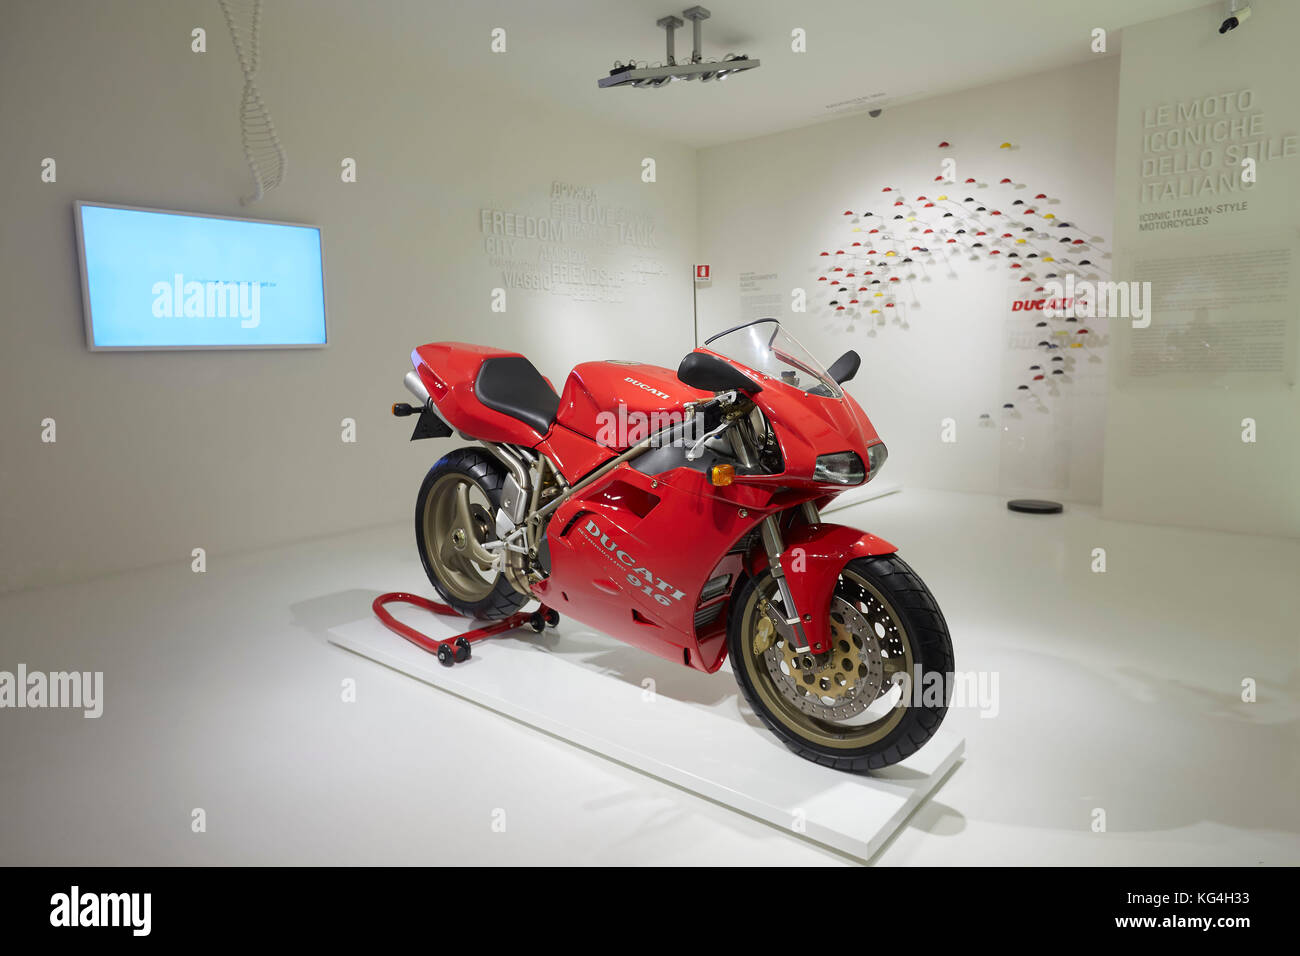 Ducati classic 916 motociclo sul display principale in Ducati museum, Bologna, Italia. Foto Stock